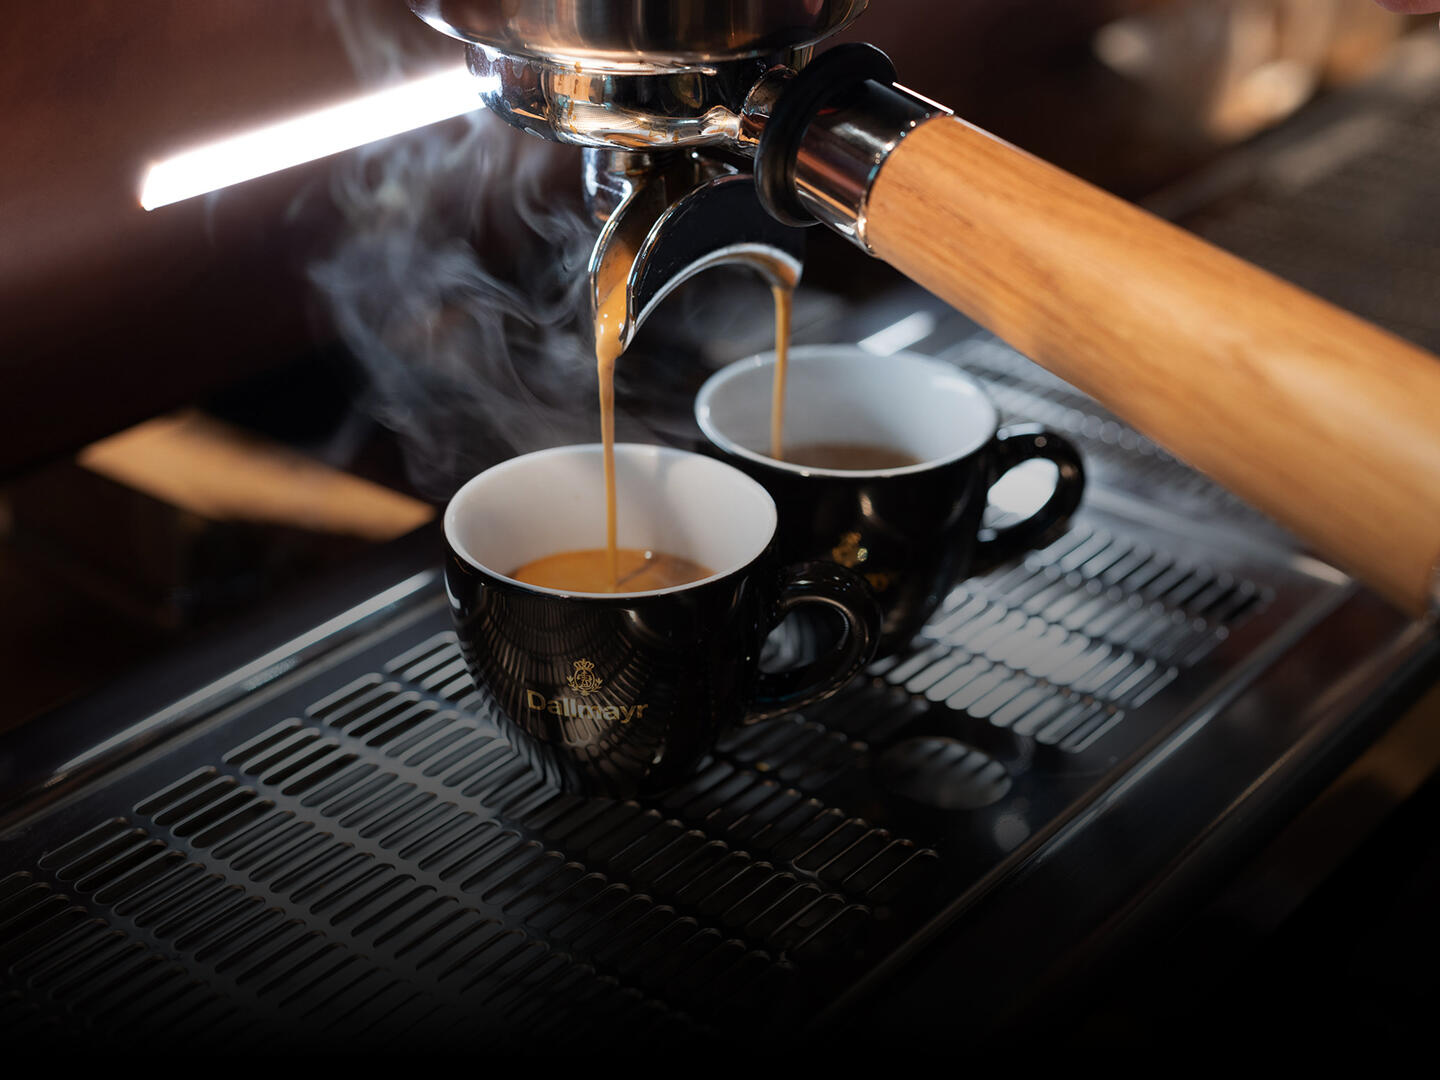 Dallmayr Espresso d'Oro spływa z kolby do dwóch filiżanek do espresso